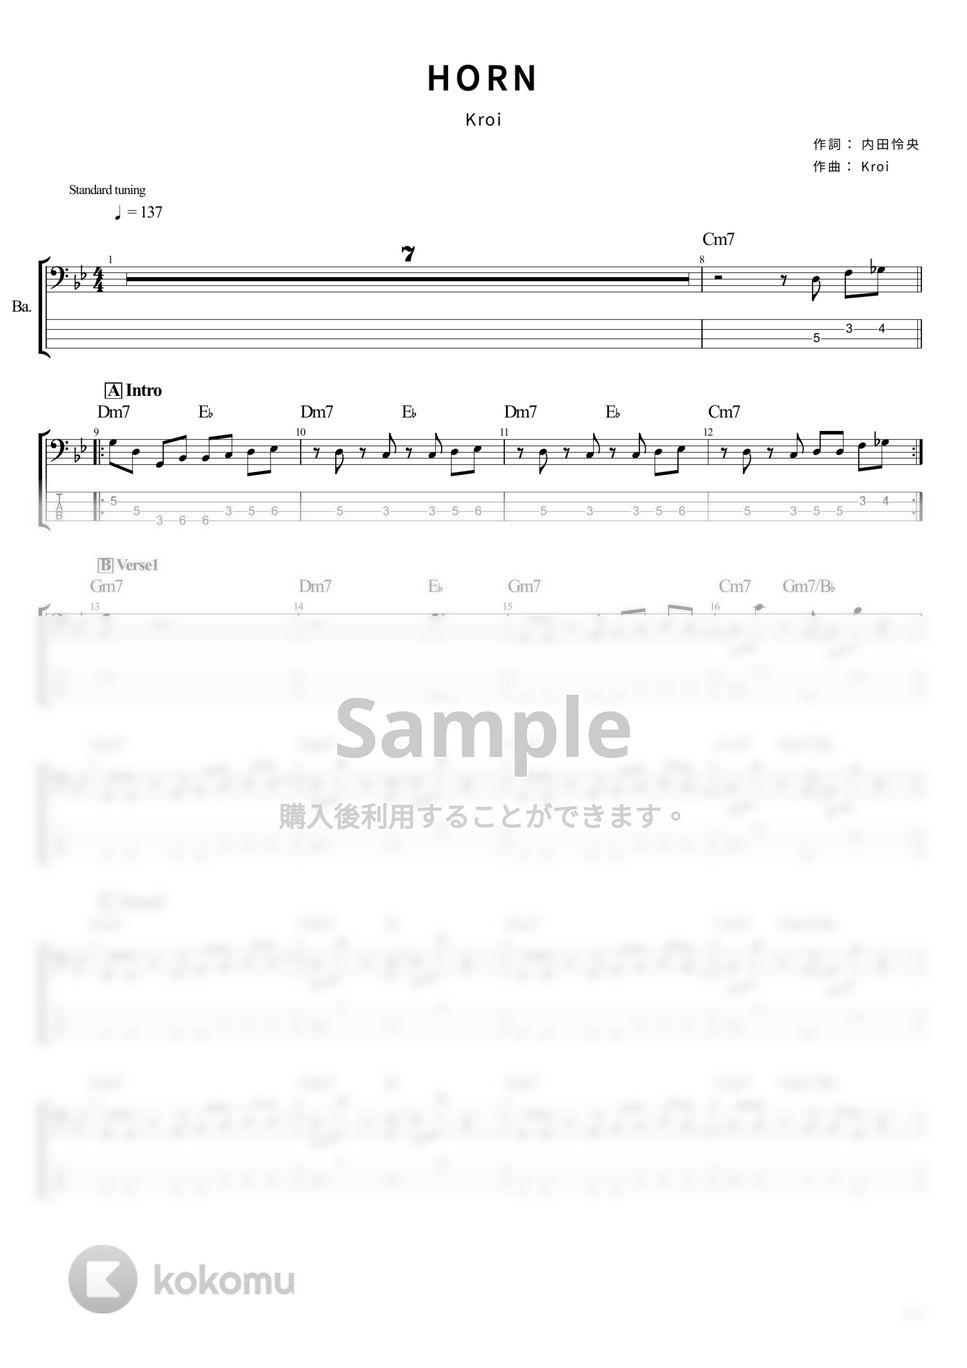 Kroi - HORN (ベース Tab譜 4弦) by T's bass score